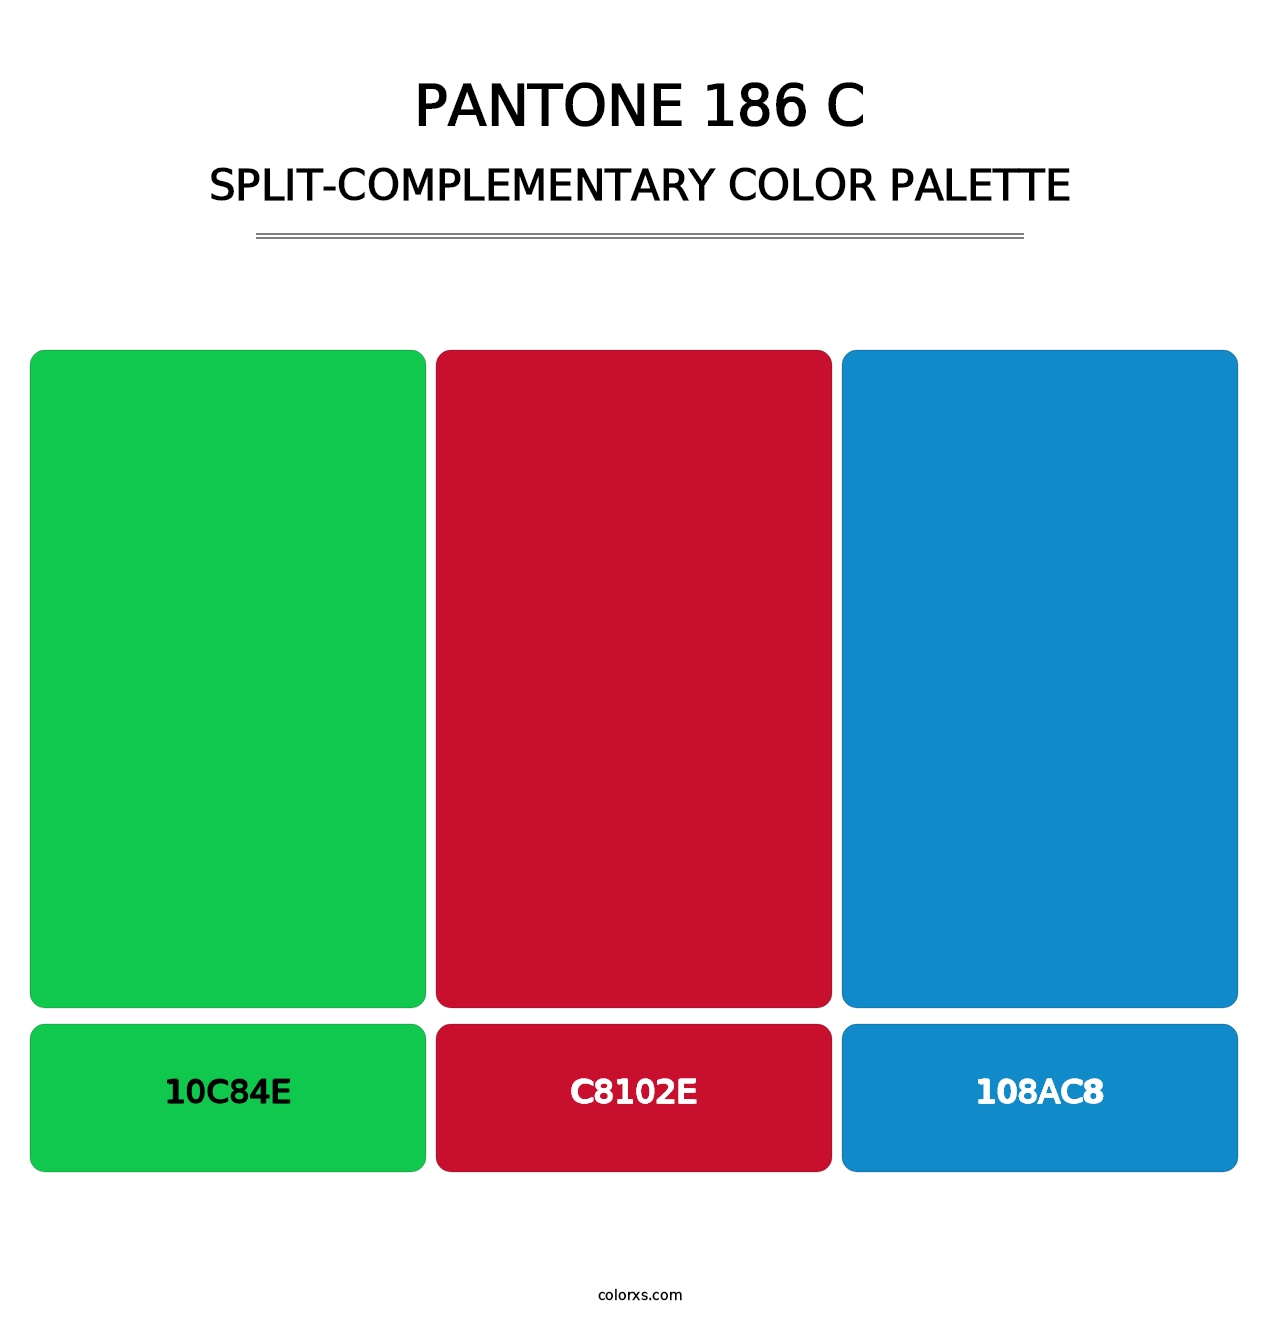 PANTONE 186 C - Split-Complementary Color Palette